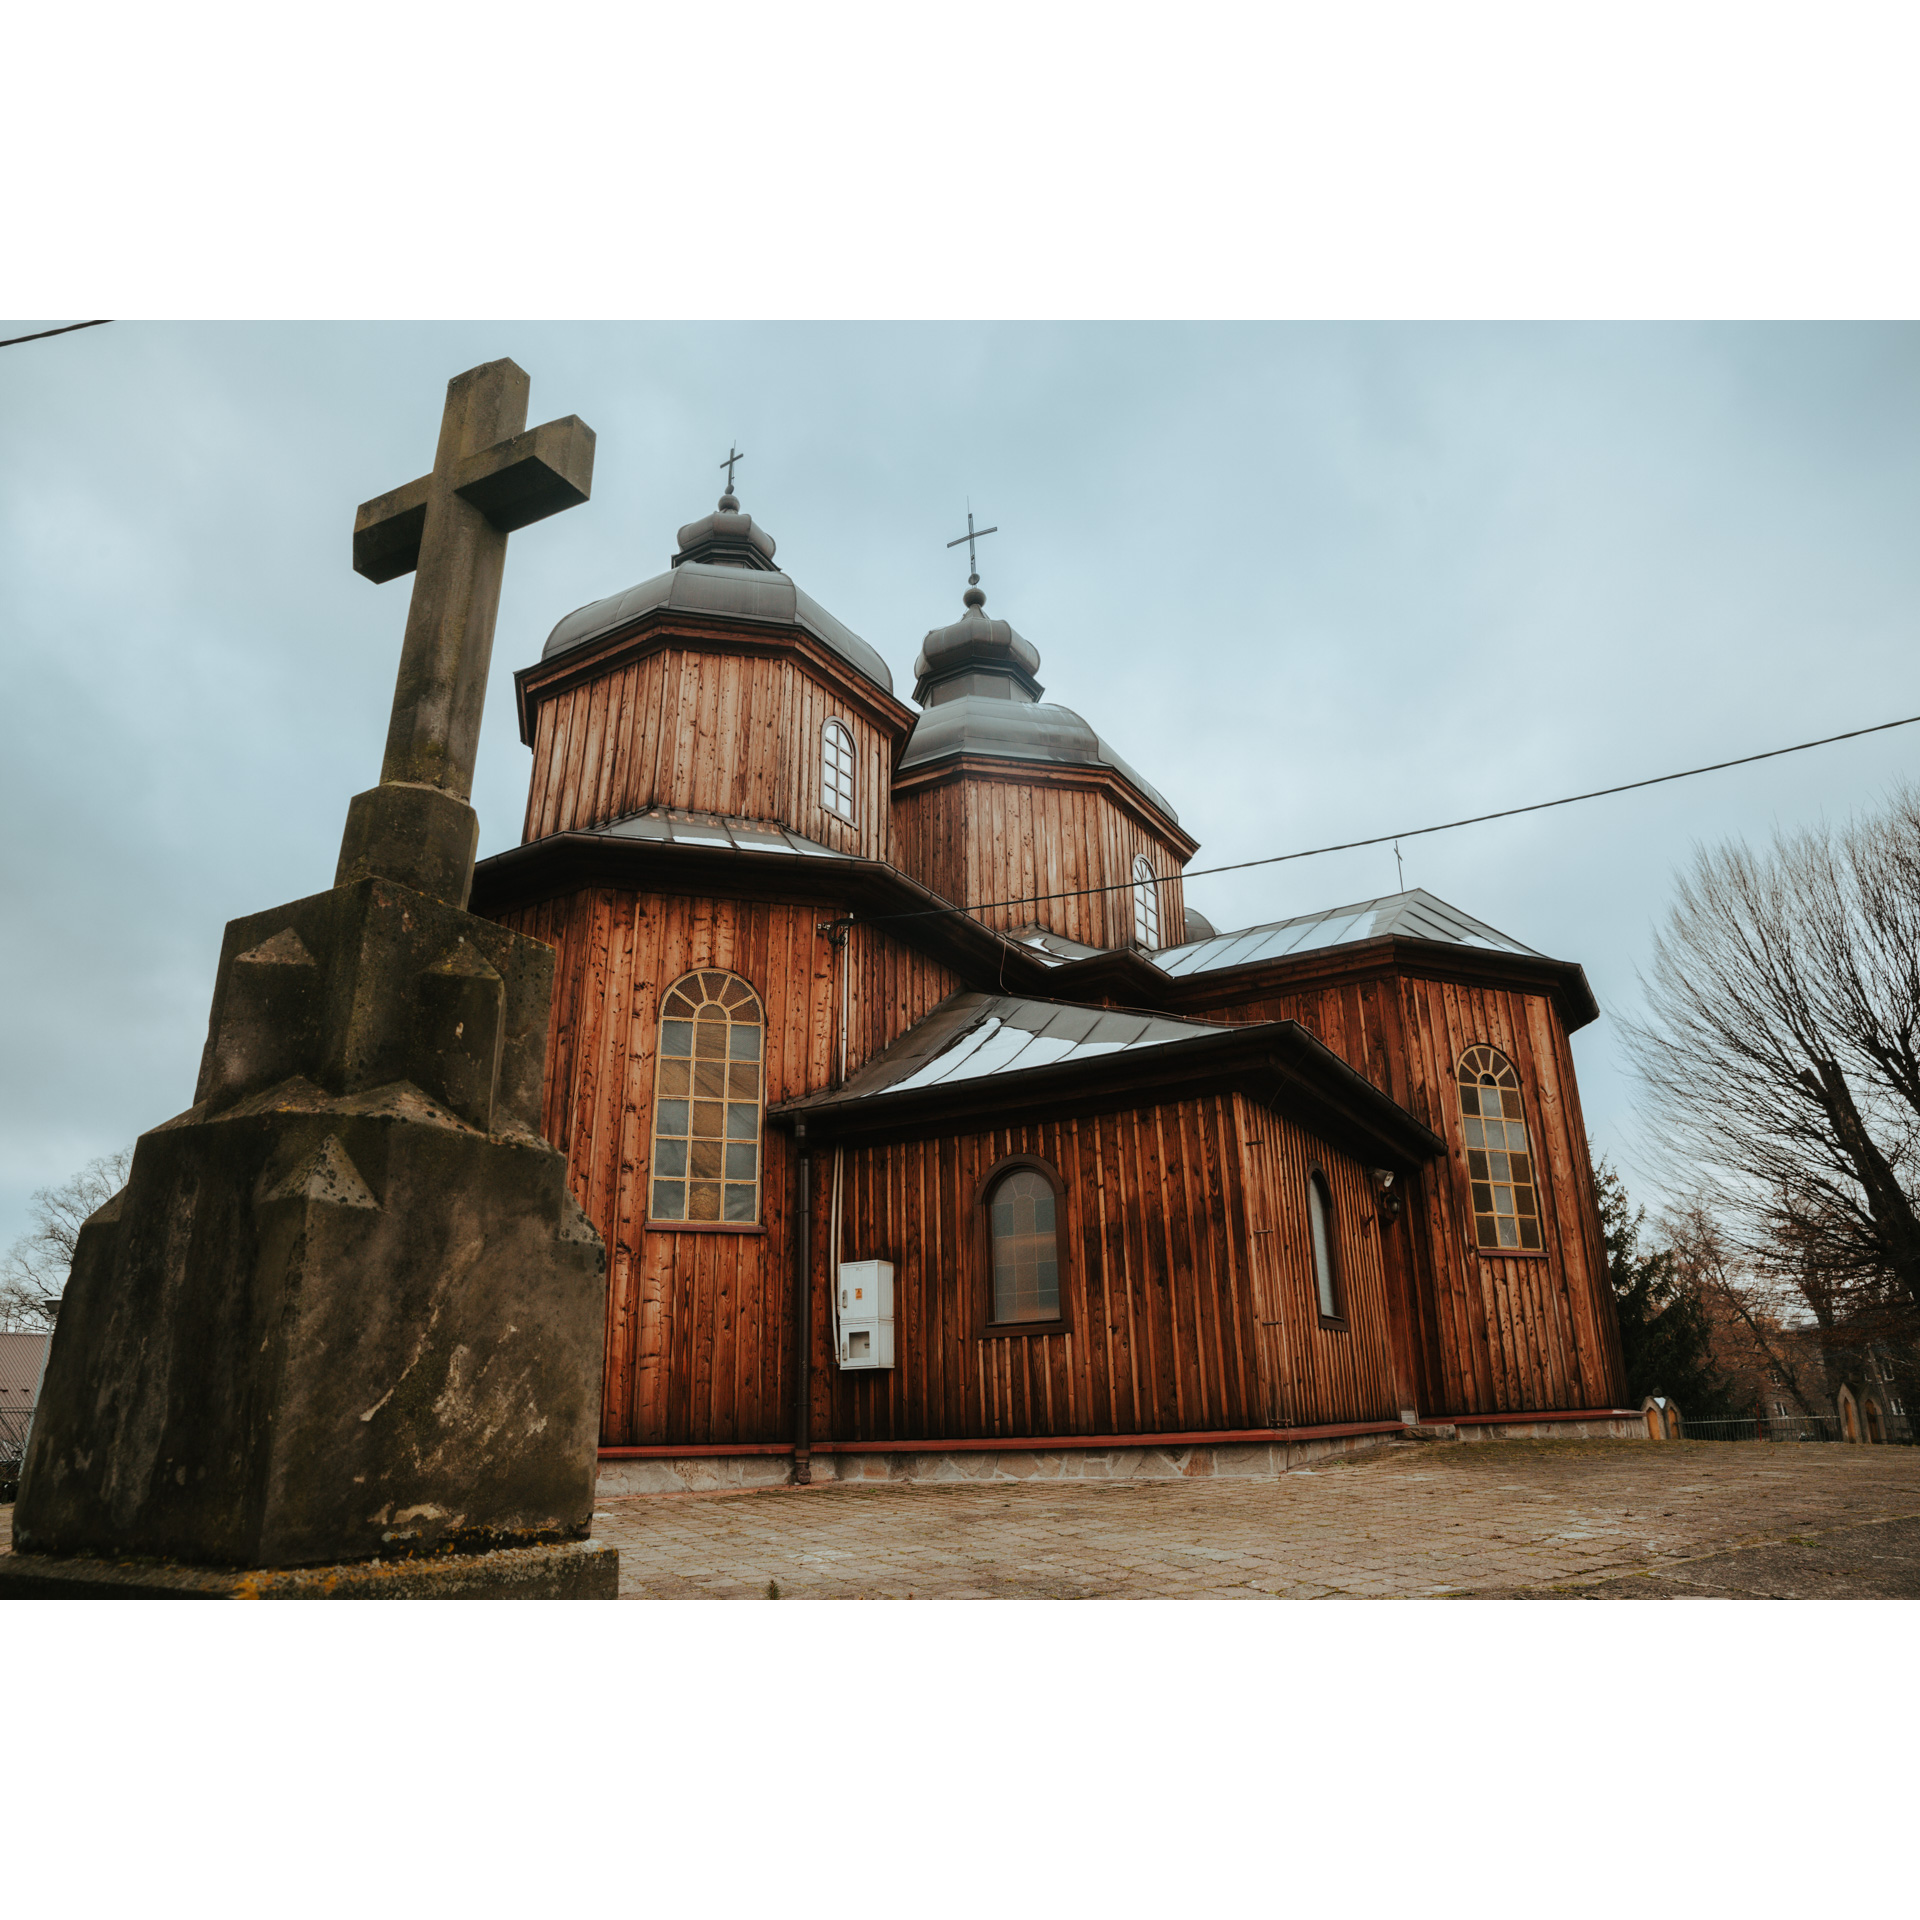 Drewniana cerkiew wykonana z desek pionowych, z dachem pokrytym metalem, z dwoma kopułami na tle nieba pokrytego deszczowymi chmurami. Na pierwszym planie kamienny krzyż